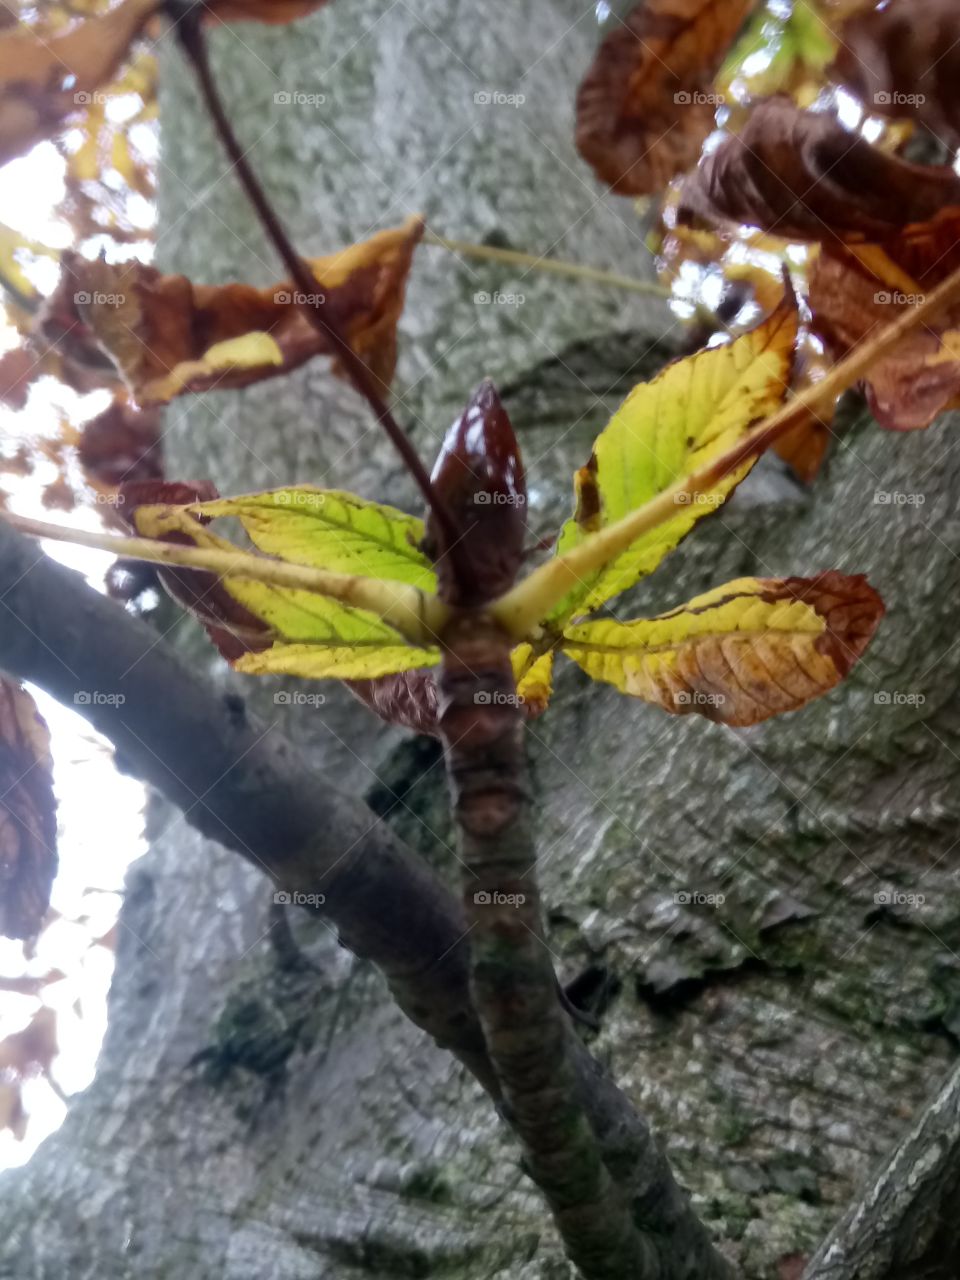 Bug leaf